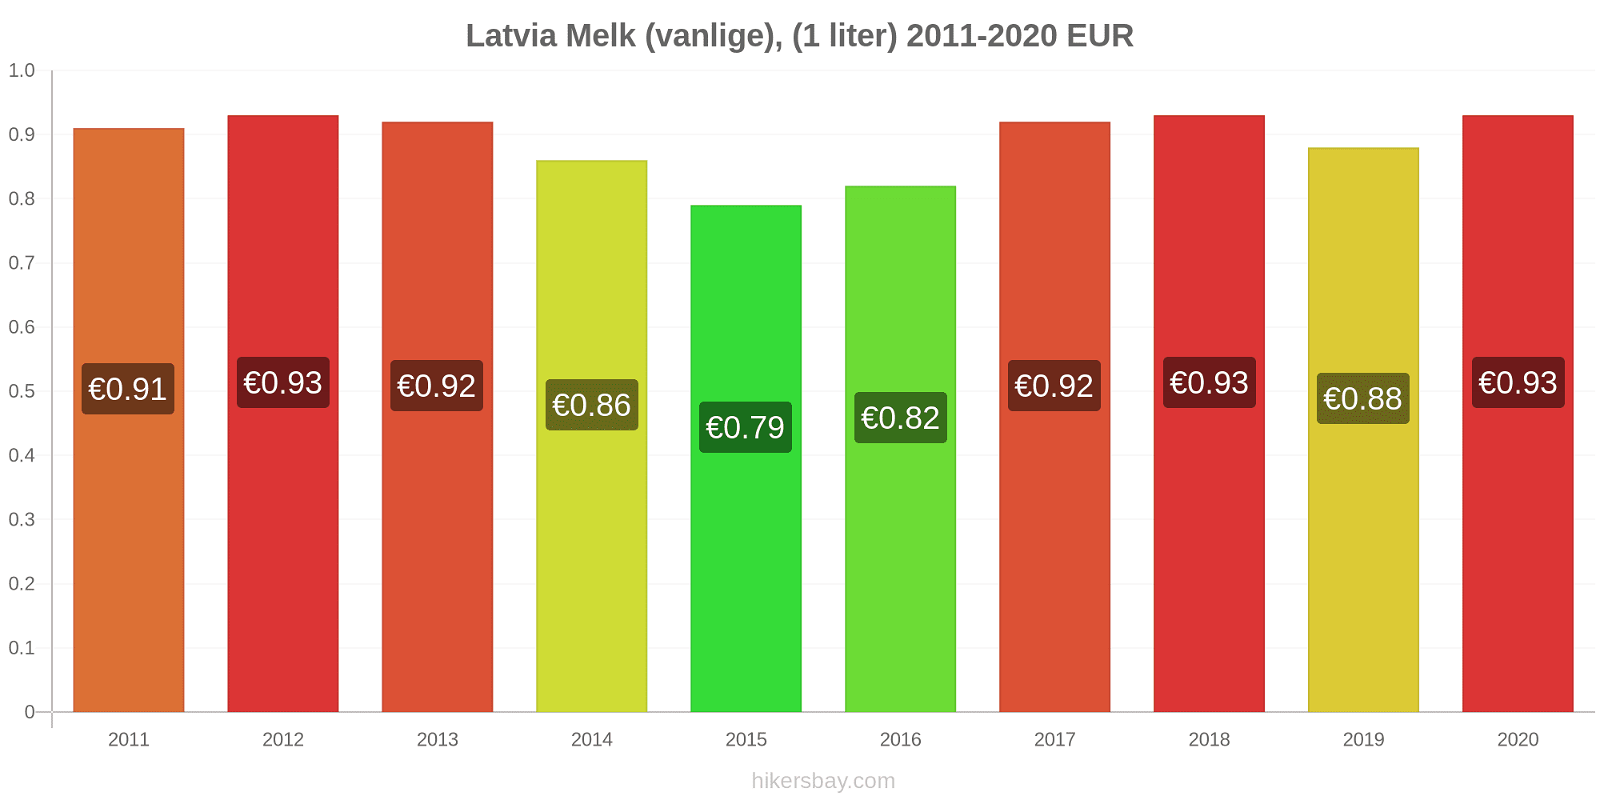 Latvia prisendringer Melk (vanlige), (1 liter) hikersbay.com